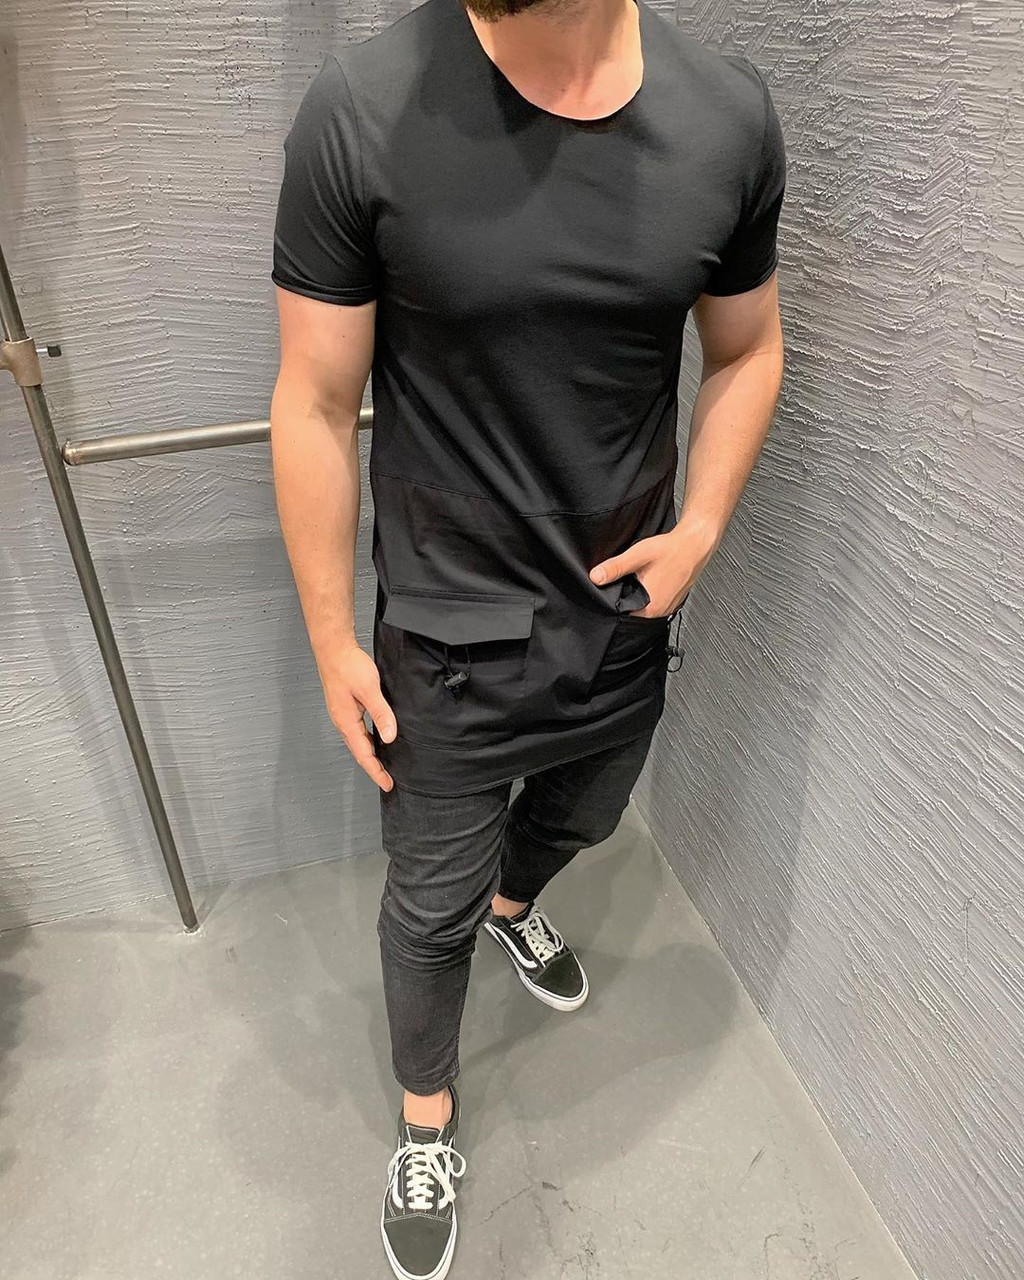 Подовжена молодіжна чоловіча футболка з кишенями, чорного кольору - S, M, L